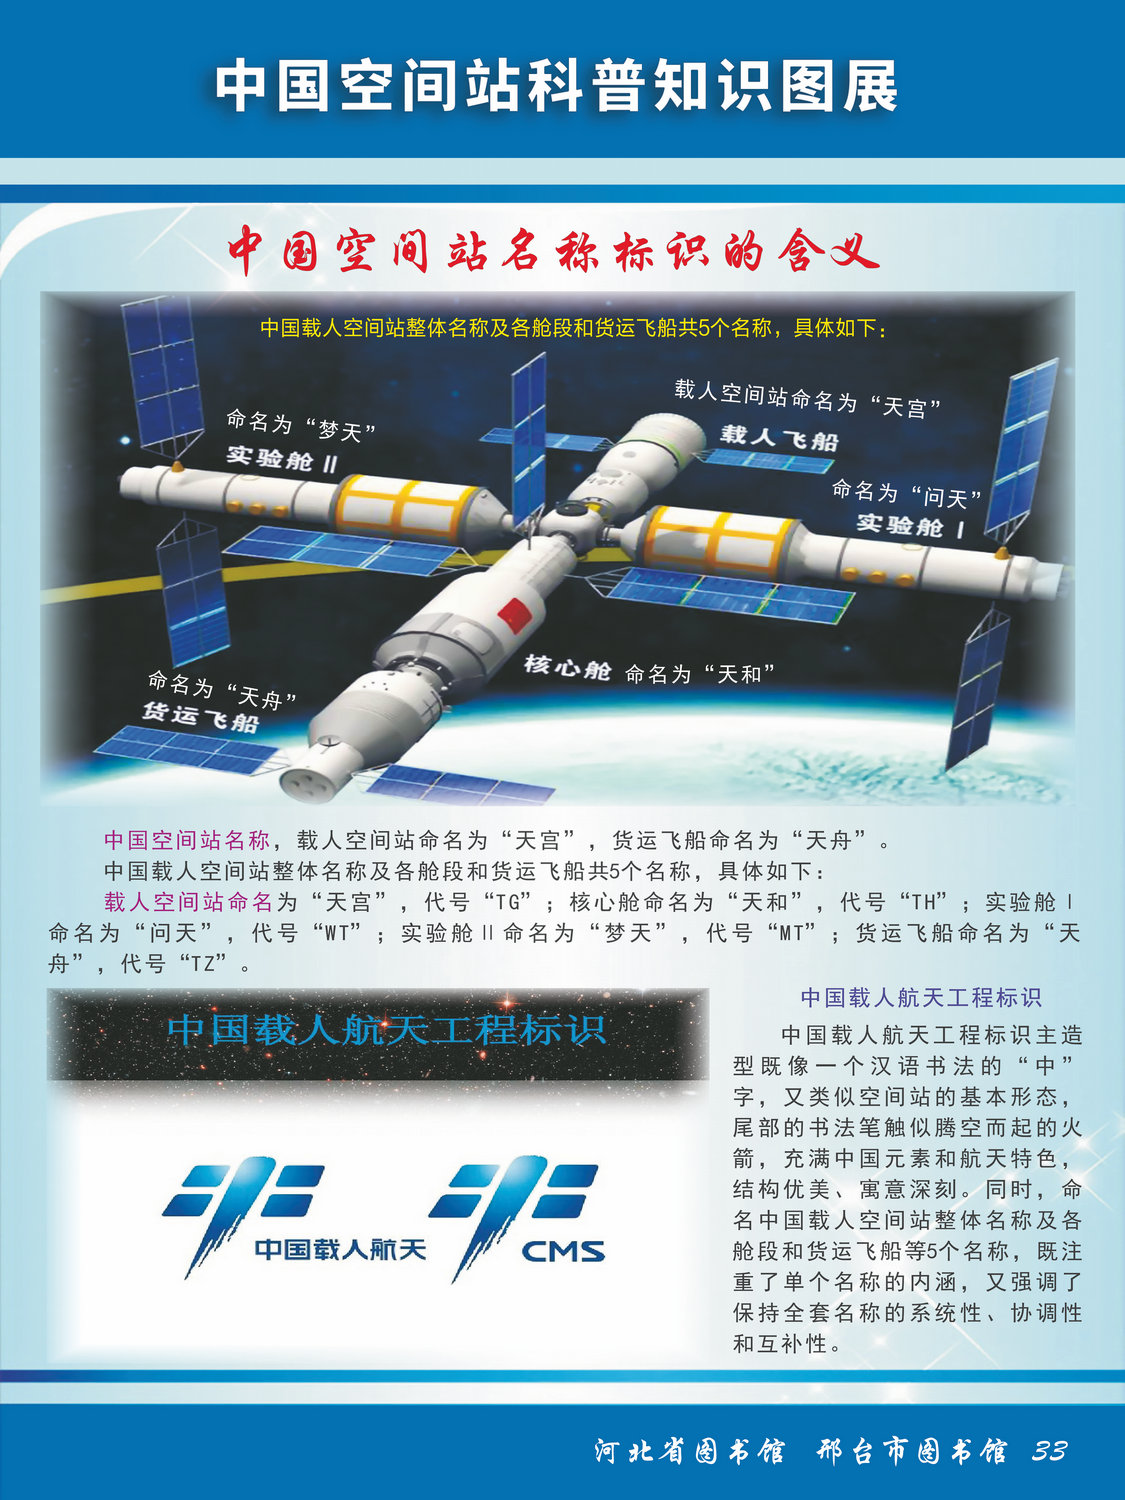 中国空间站科普知识图文展_图33